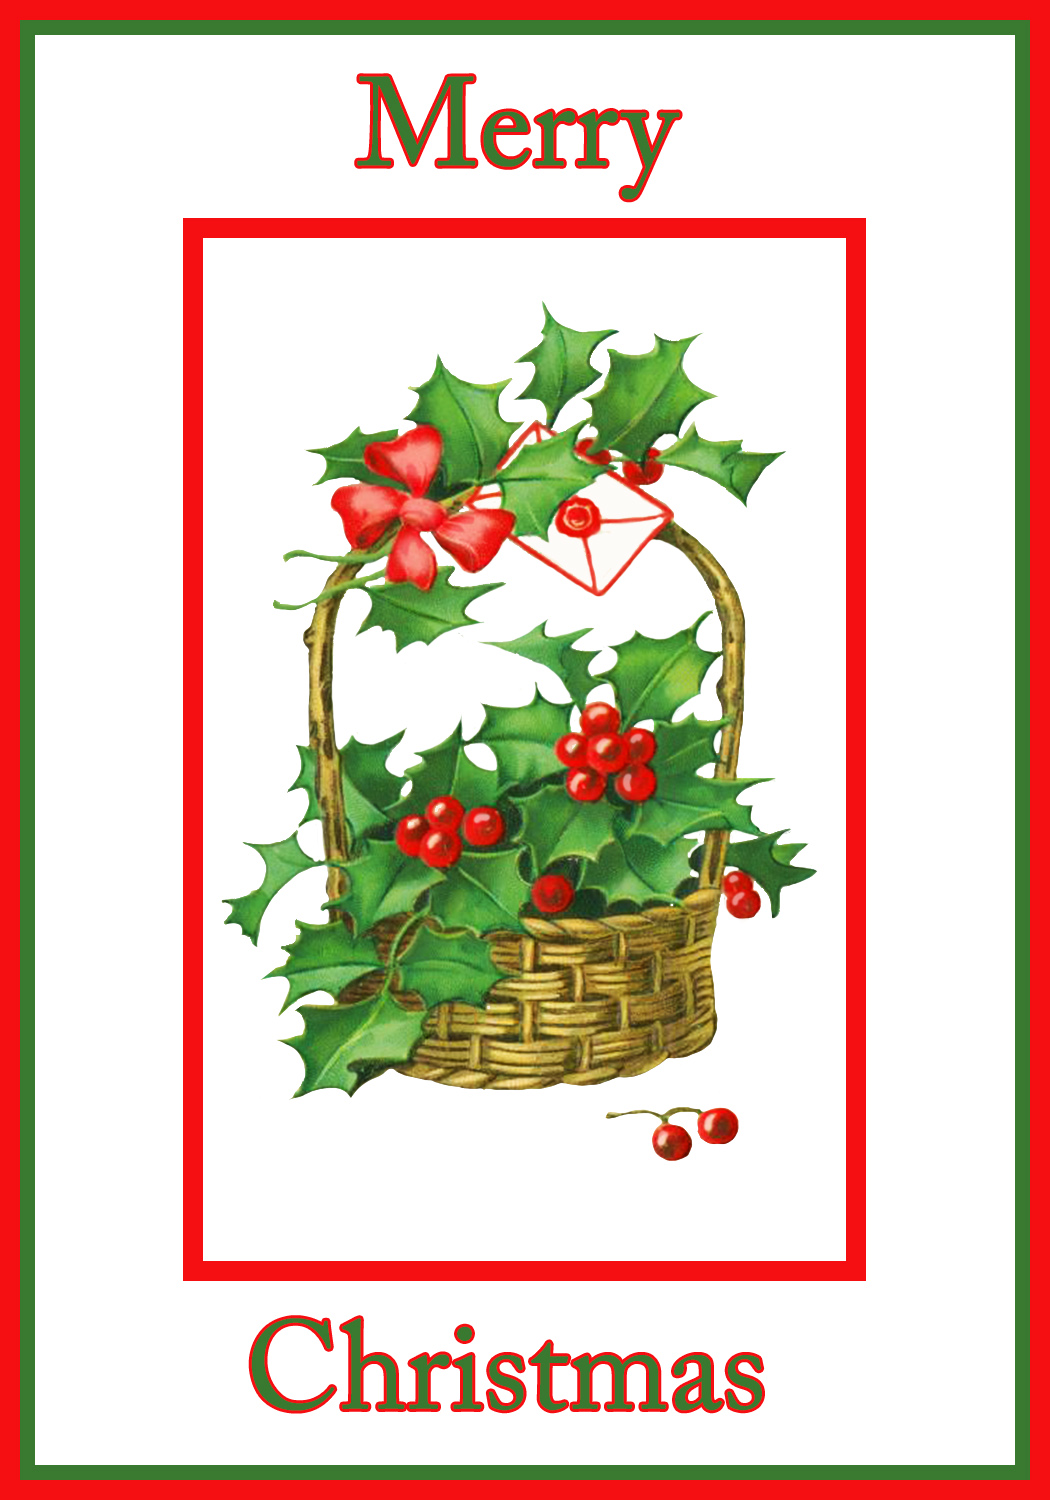 Free Printable Christmas Card Images Free Printable Templates